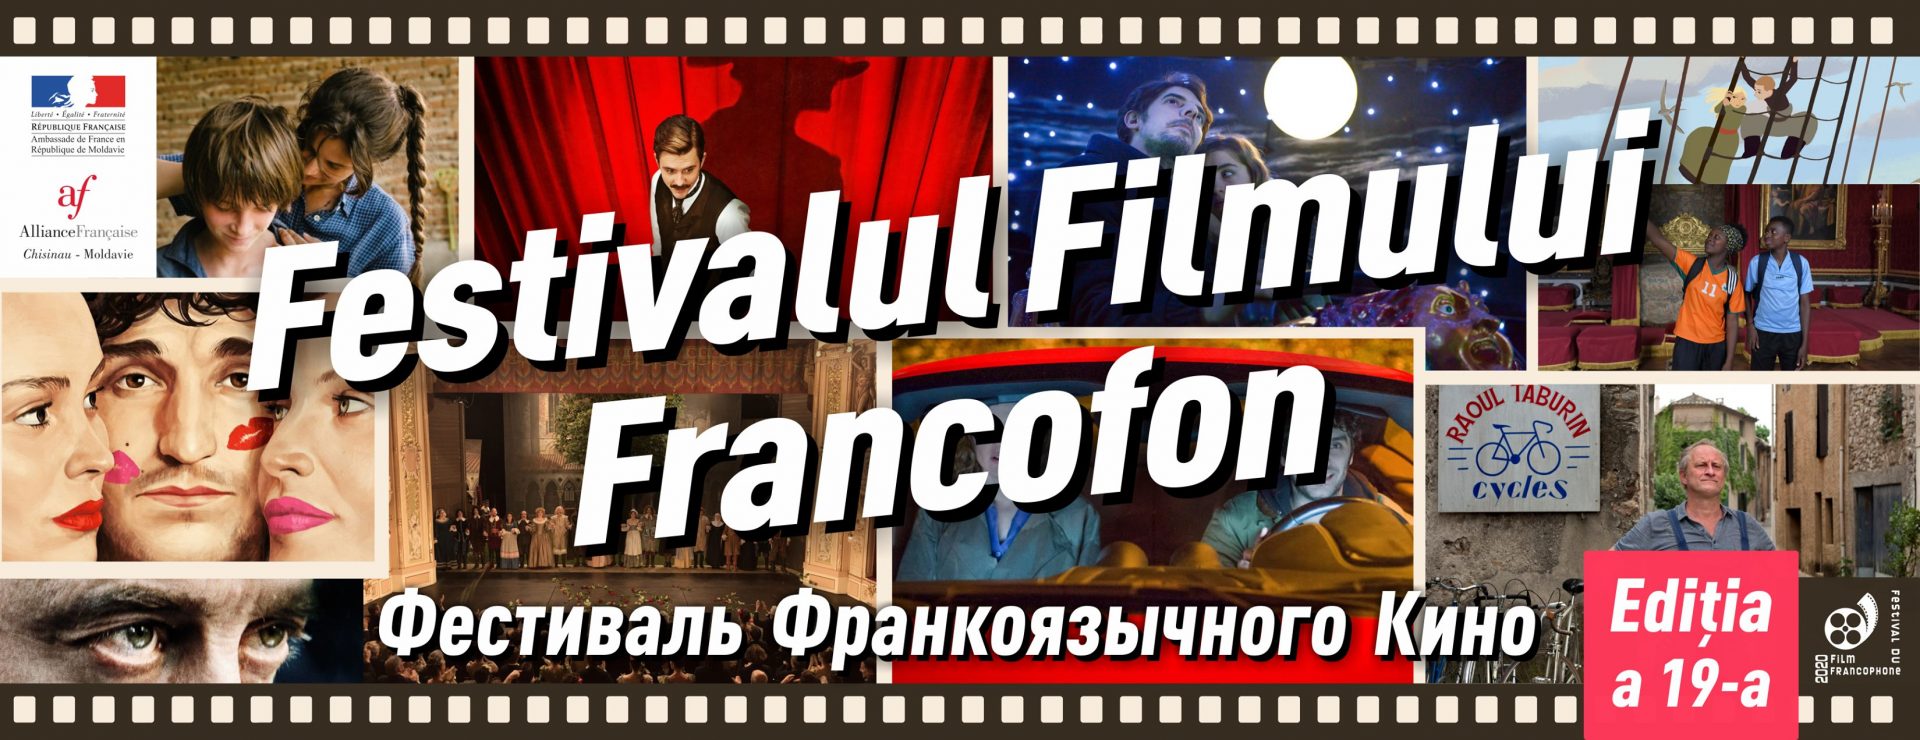 festivalul filmului francofon 2020